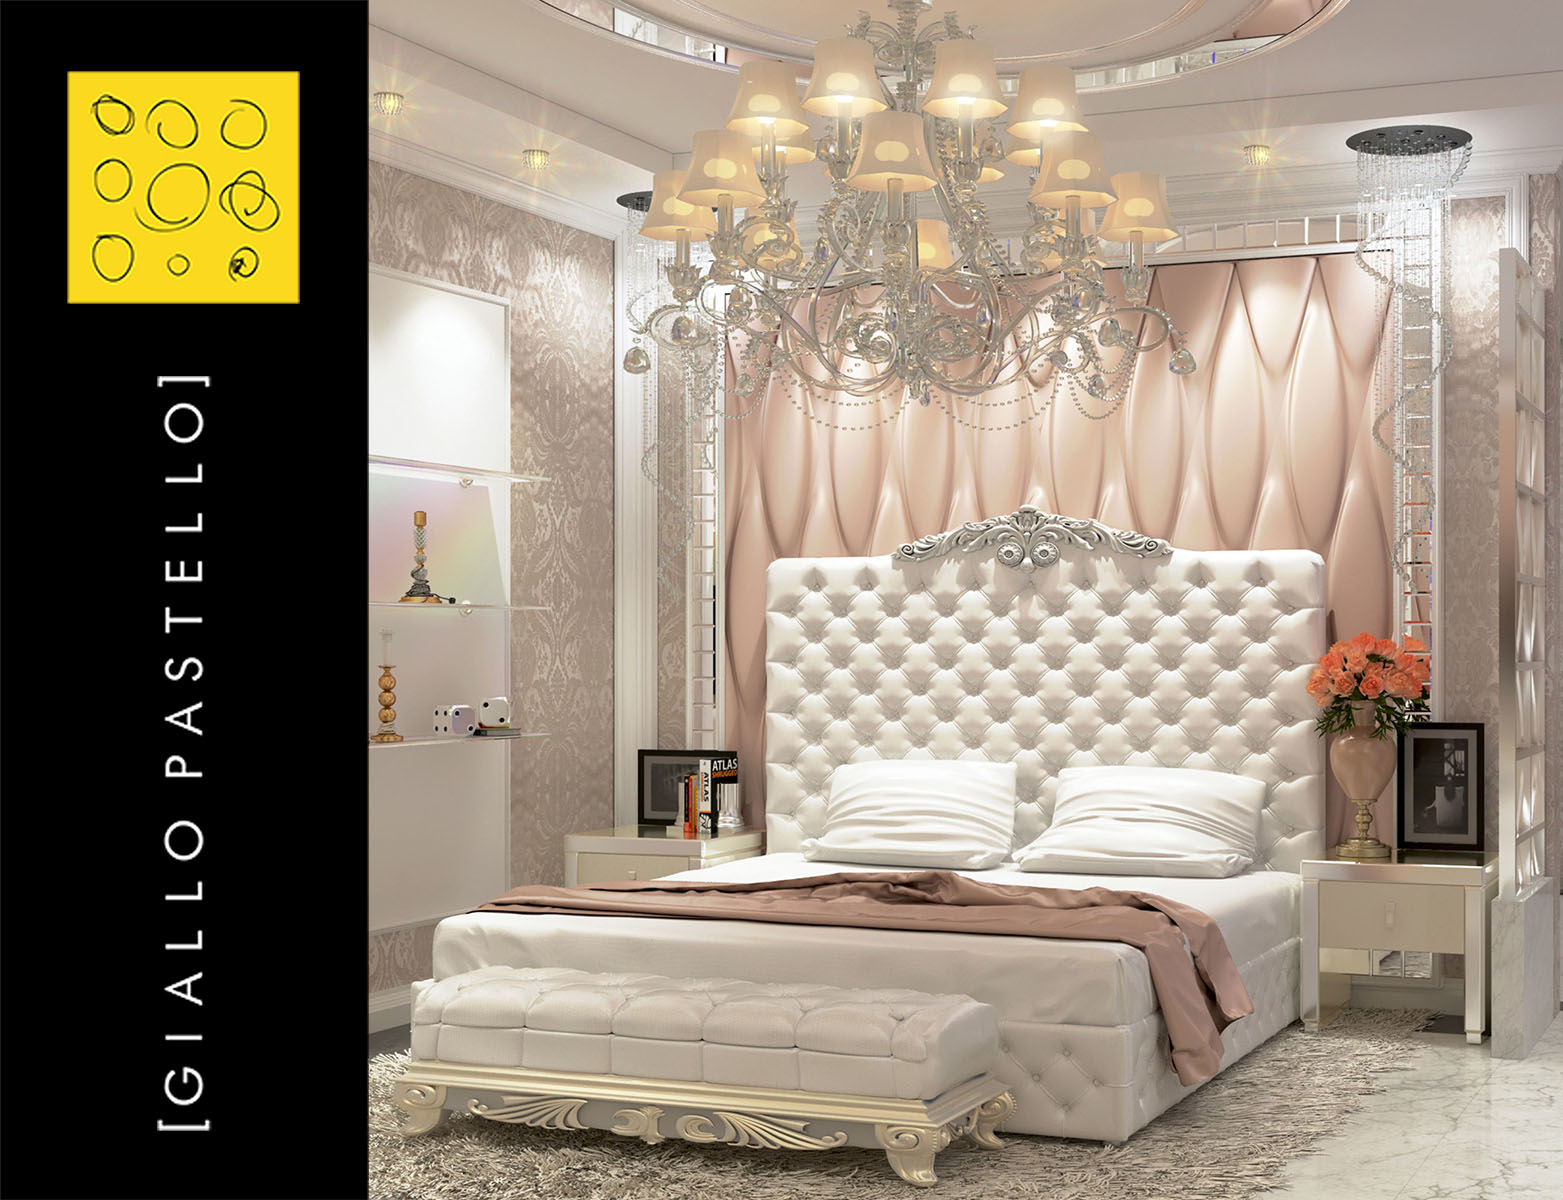 Arredo camera da letto - Esempio testata del letto classica - Giallo Pastello Interior Design, Brescia, Bergamo, Milano